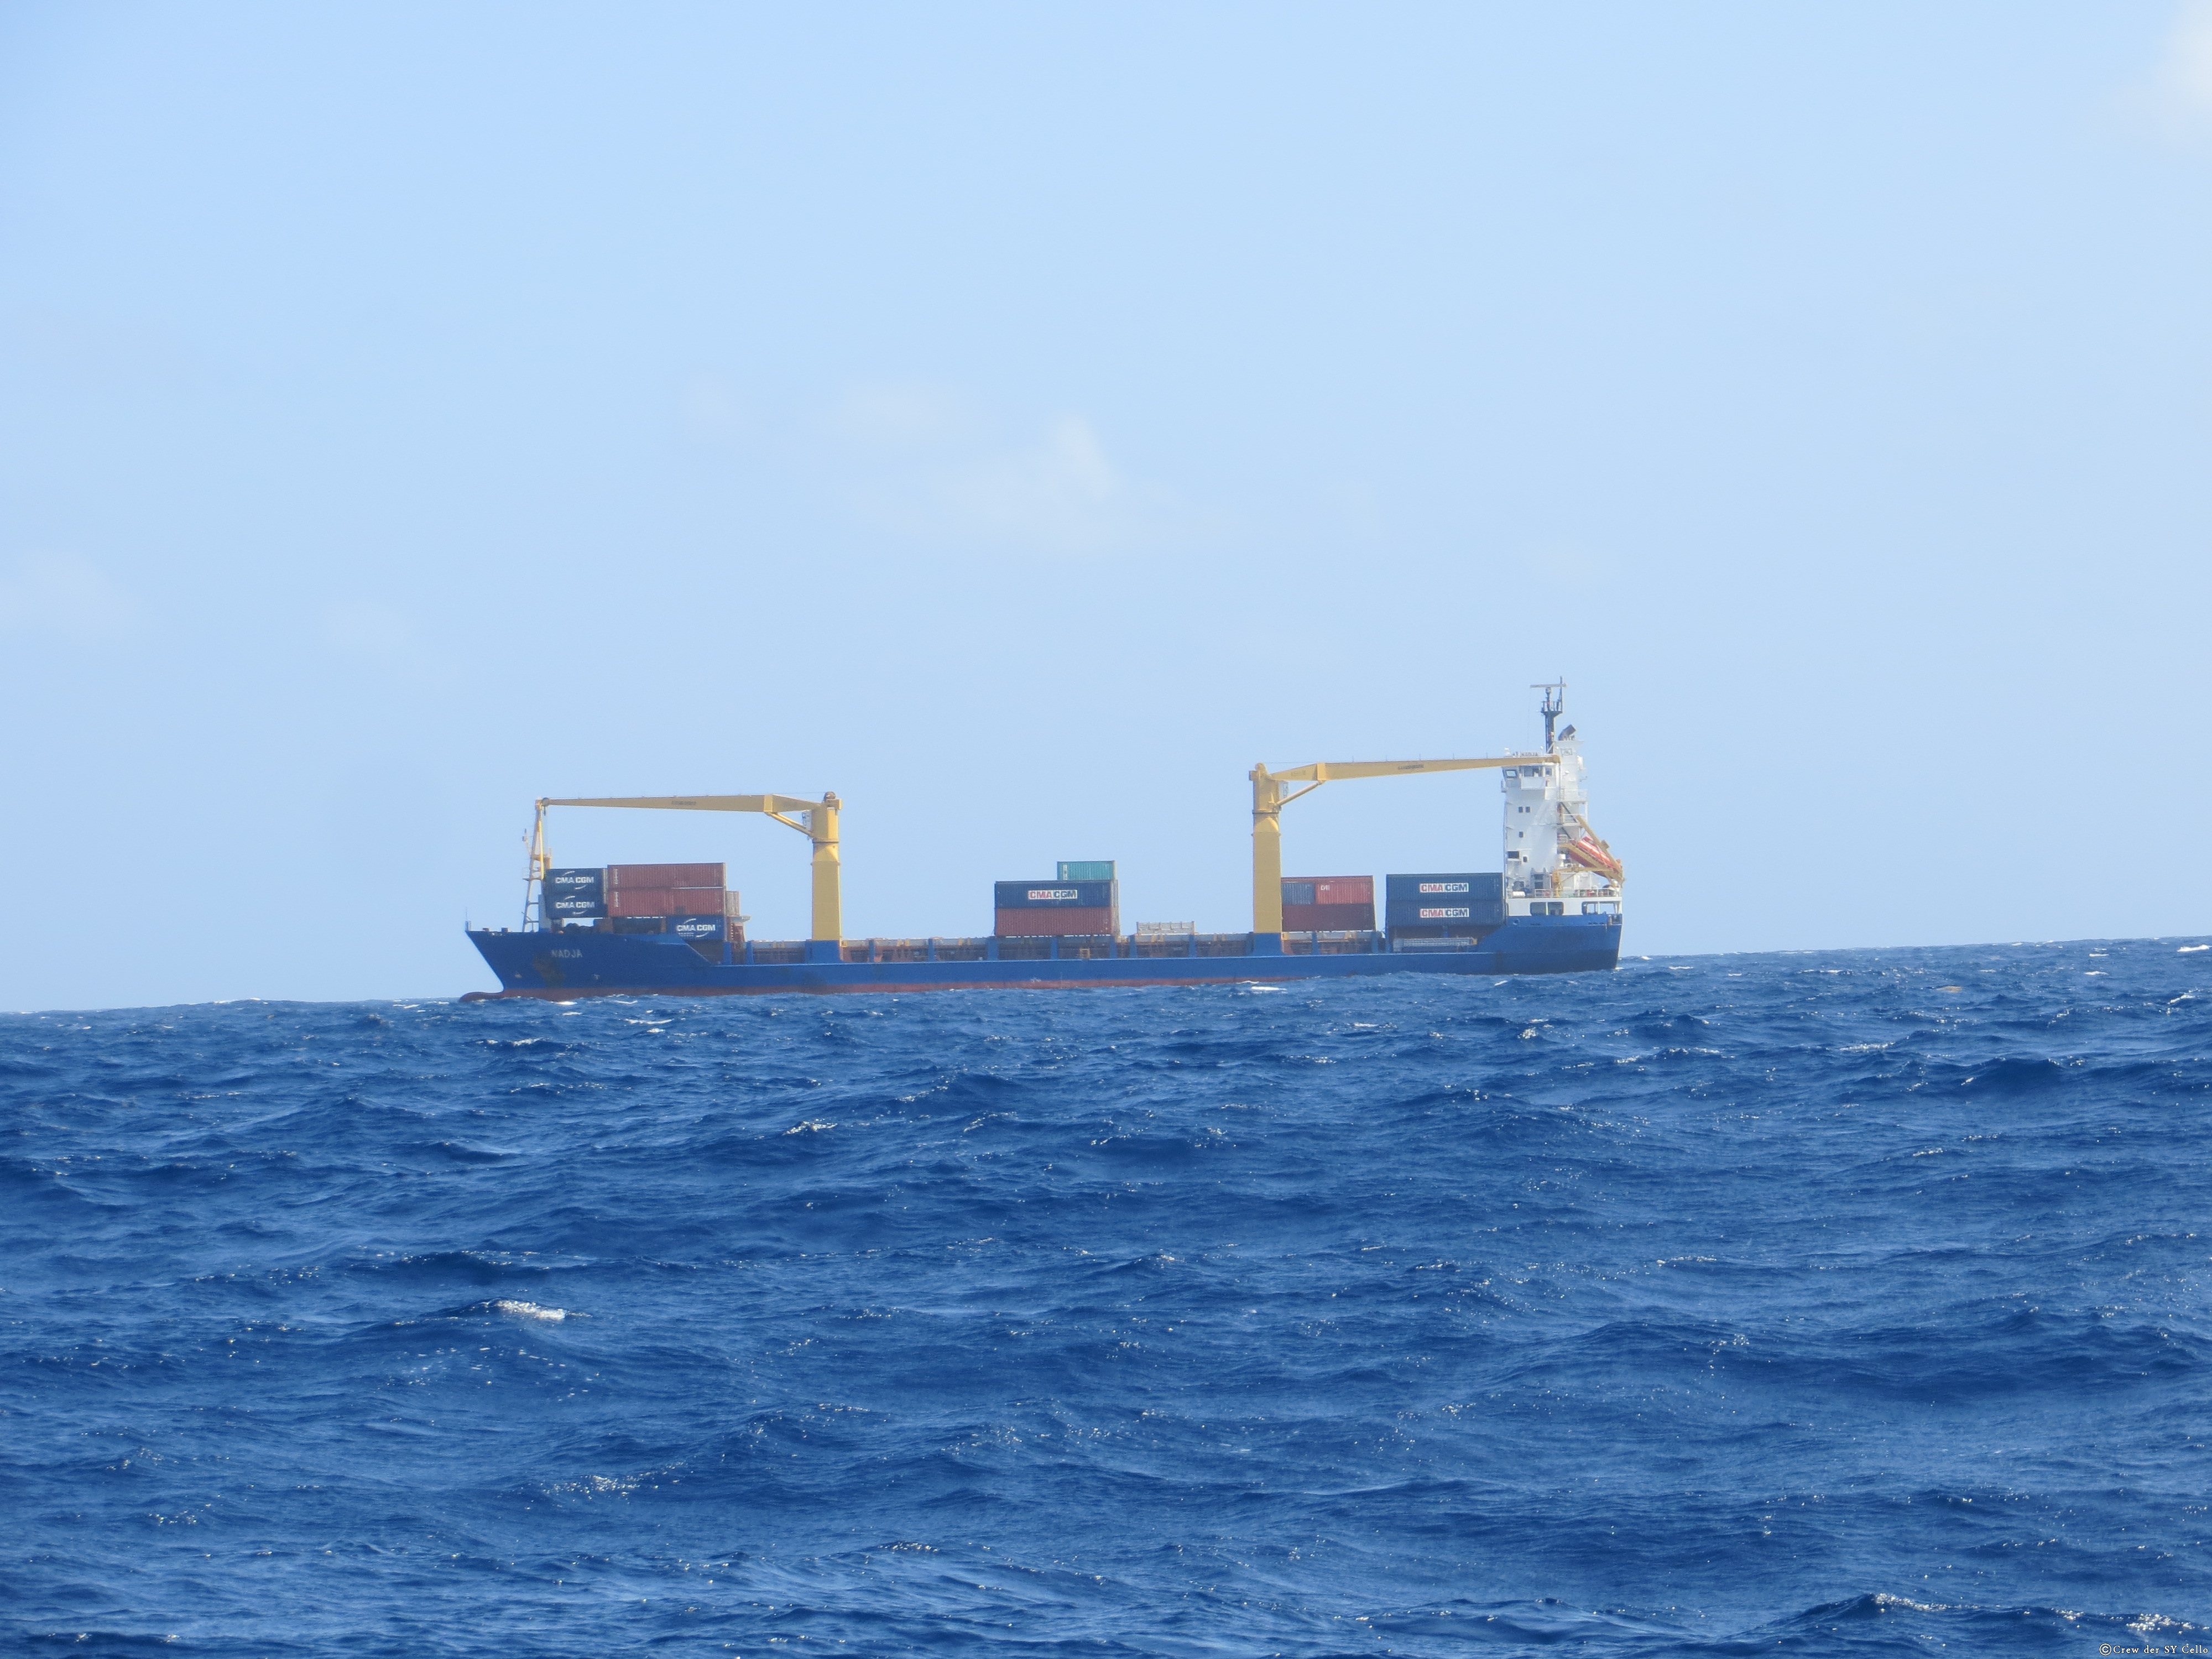 &hellip; ein Containerschiff, welches zwischen Martinique und St. Lucria fährt &hellip;